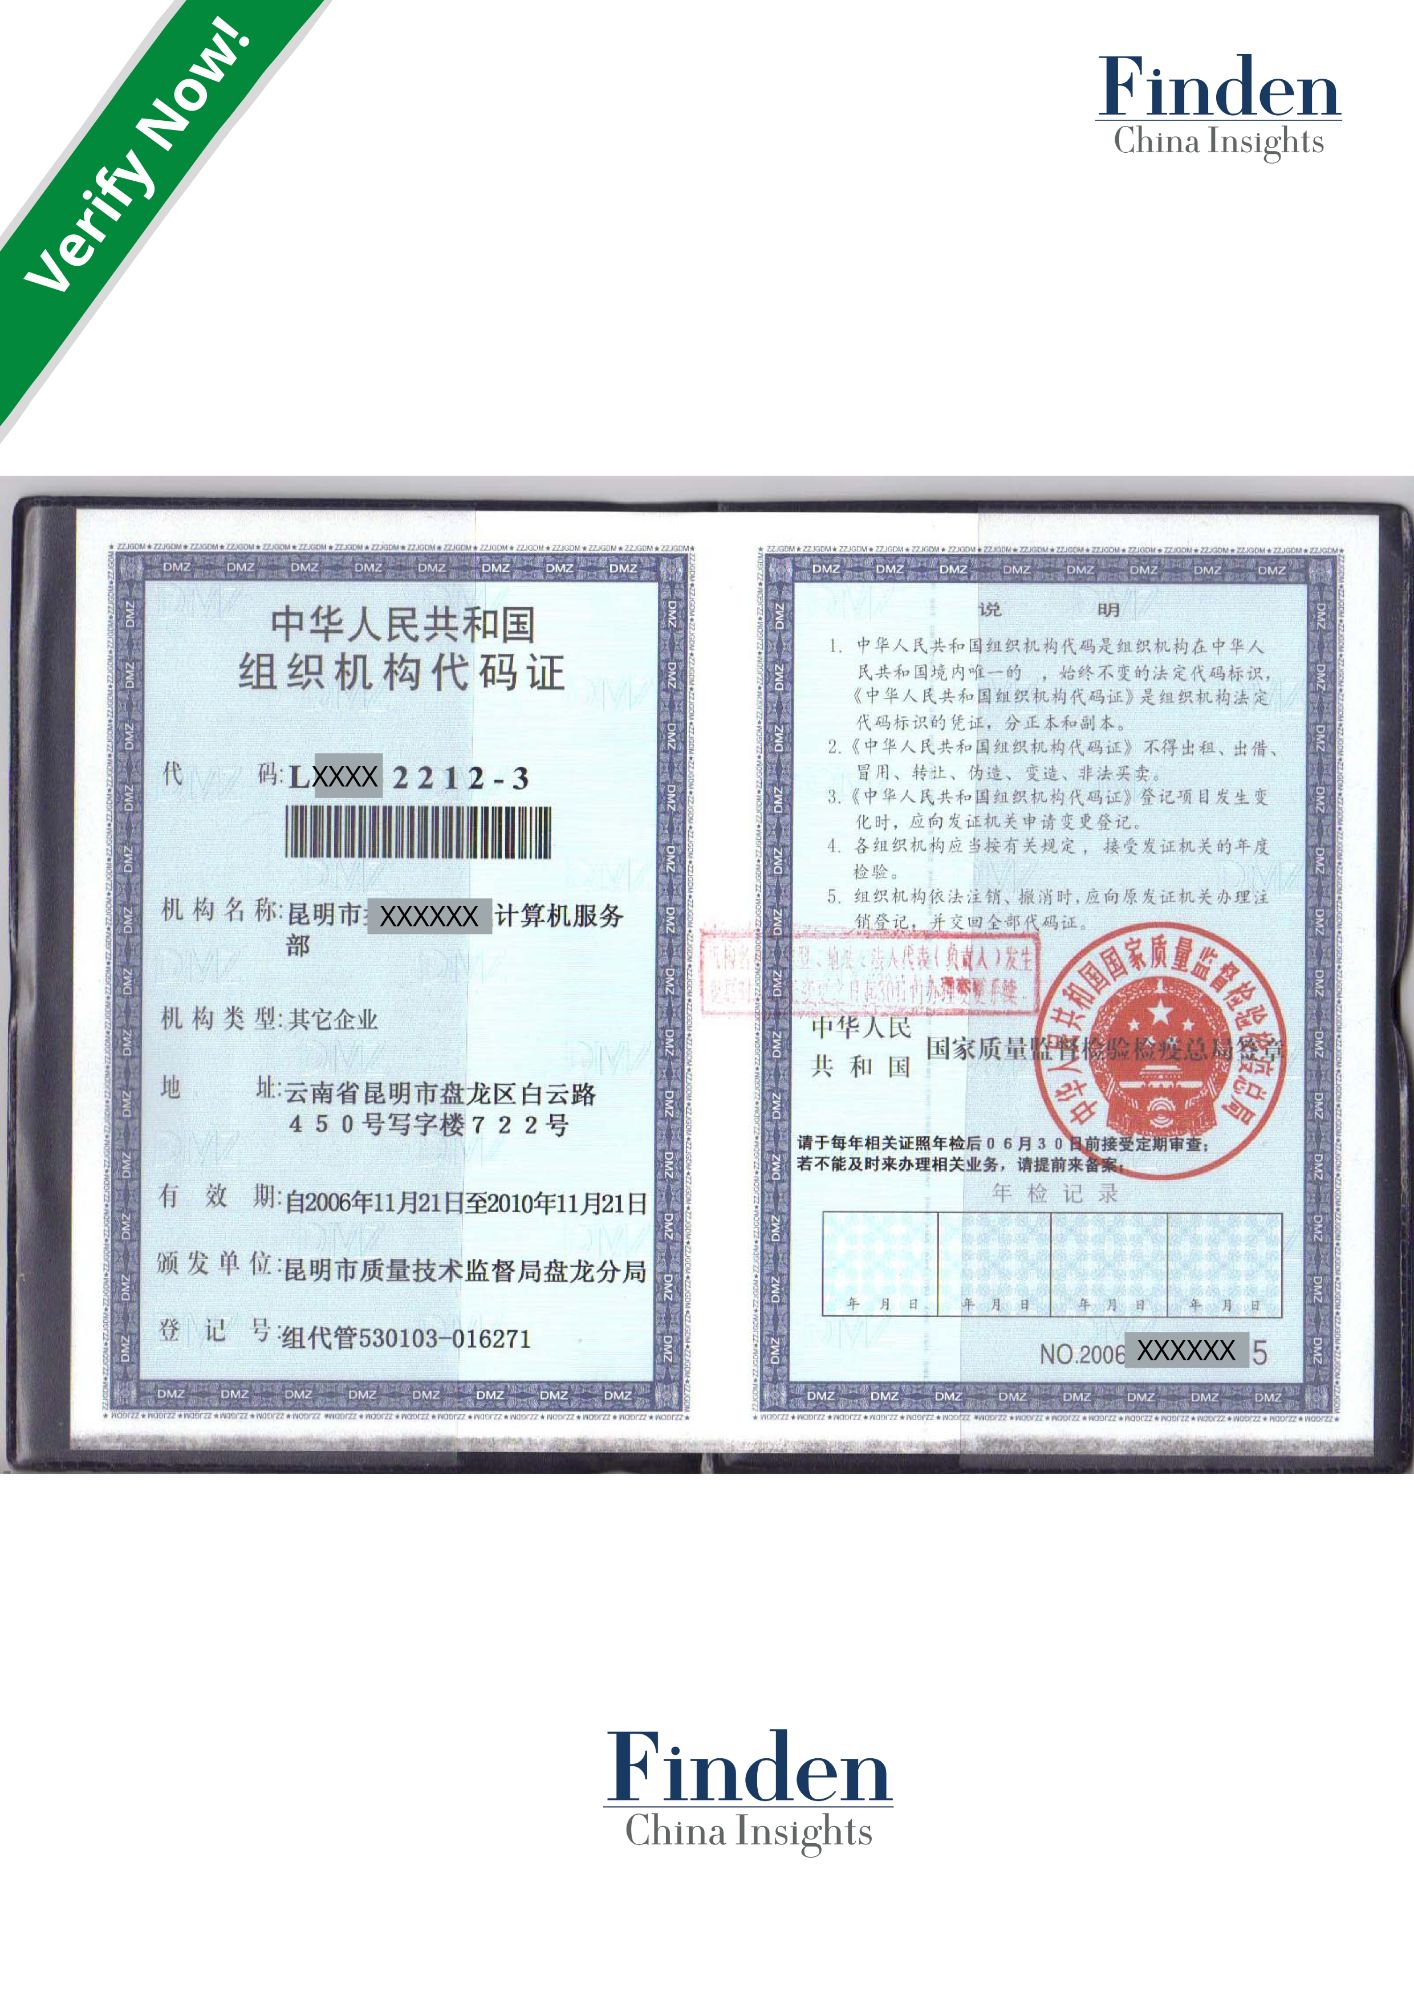 China Organization Code Verification